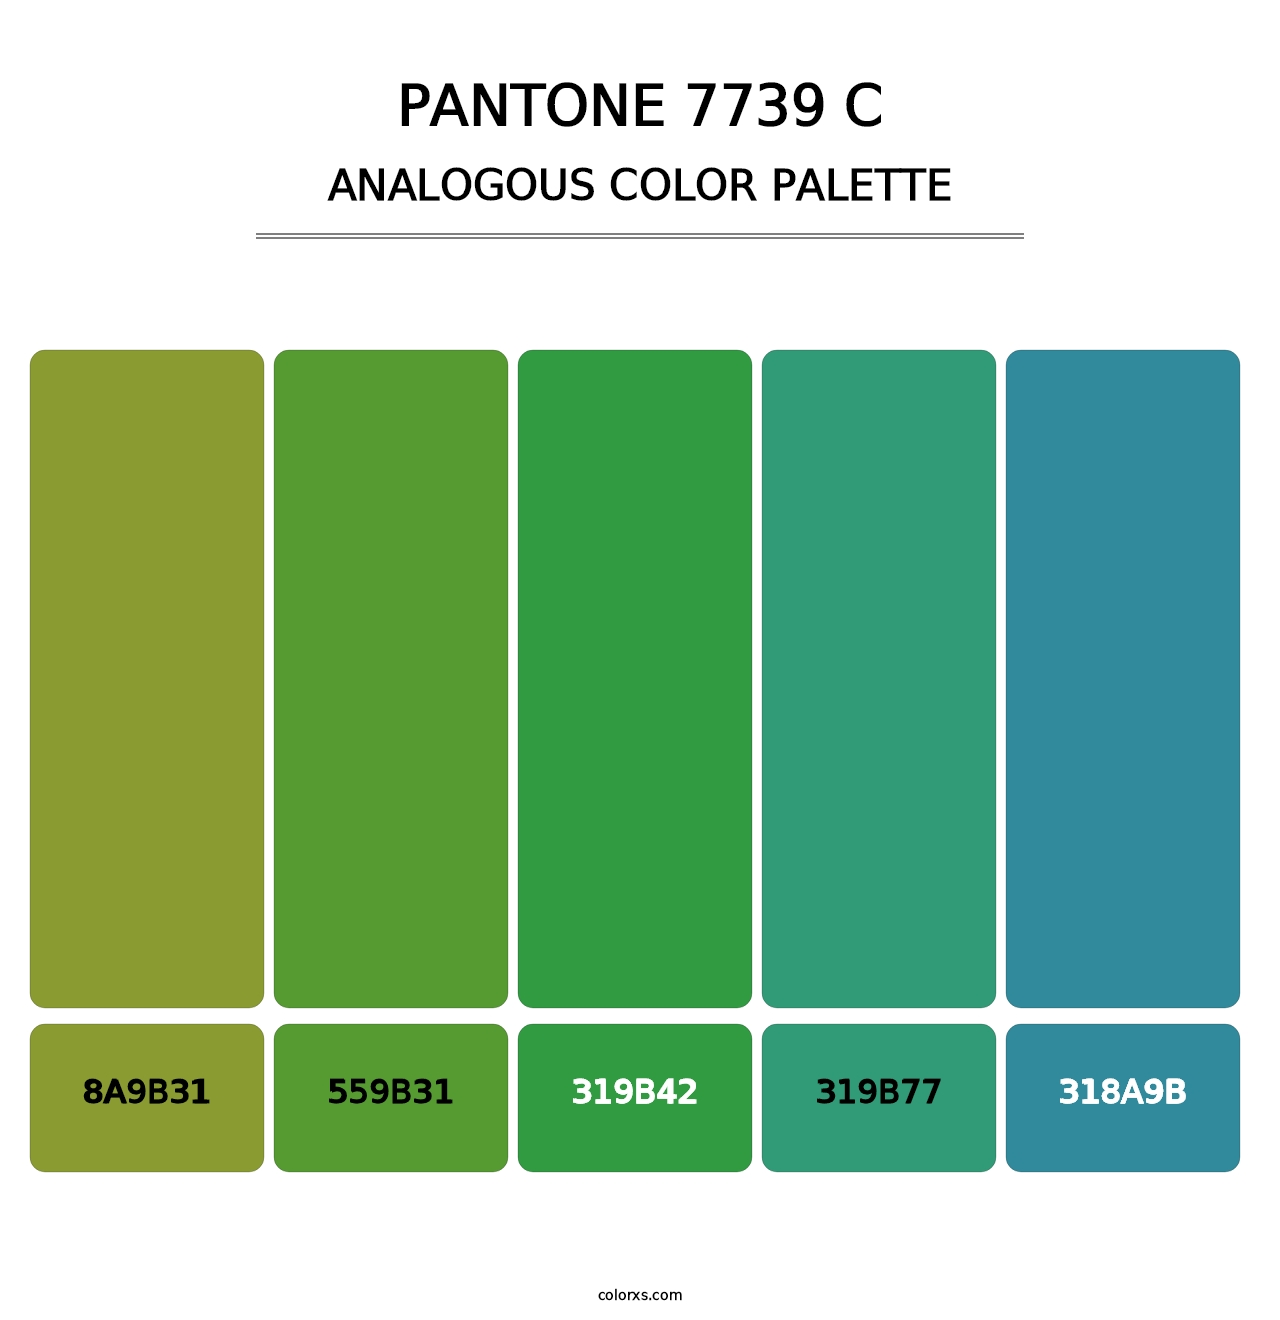 PANTONE 7739 C - Analogous Color Palette